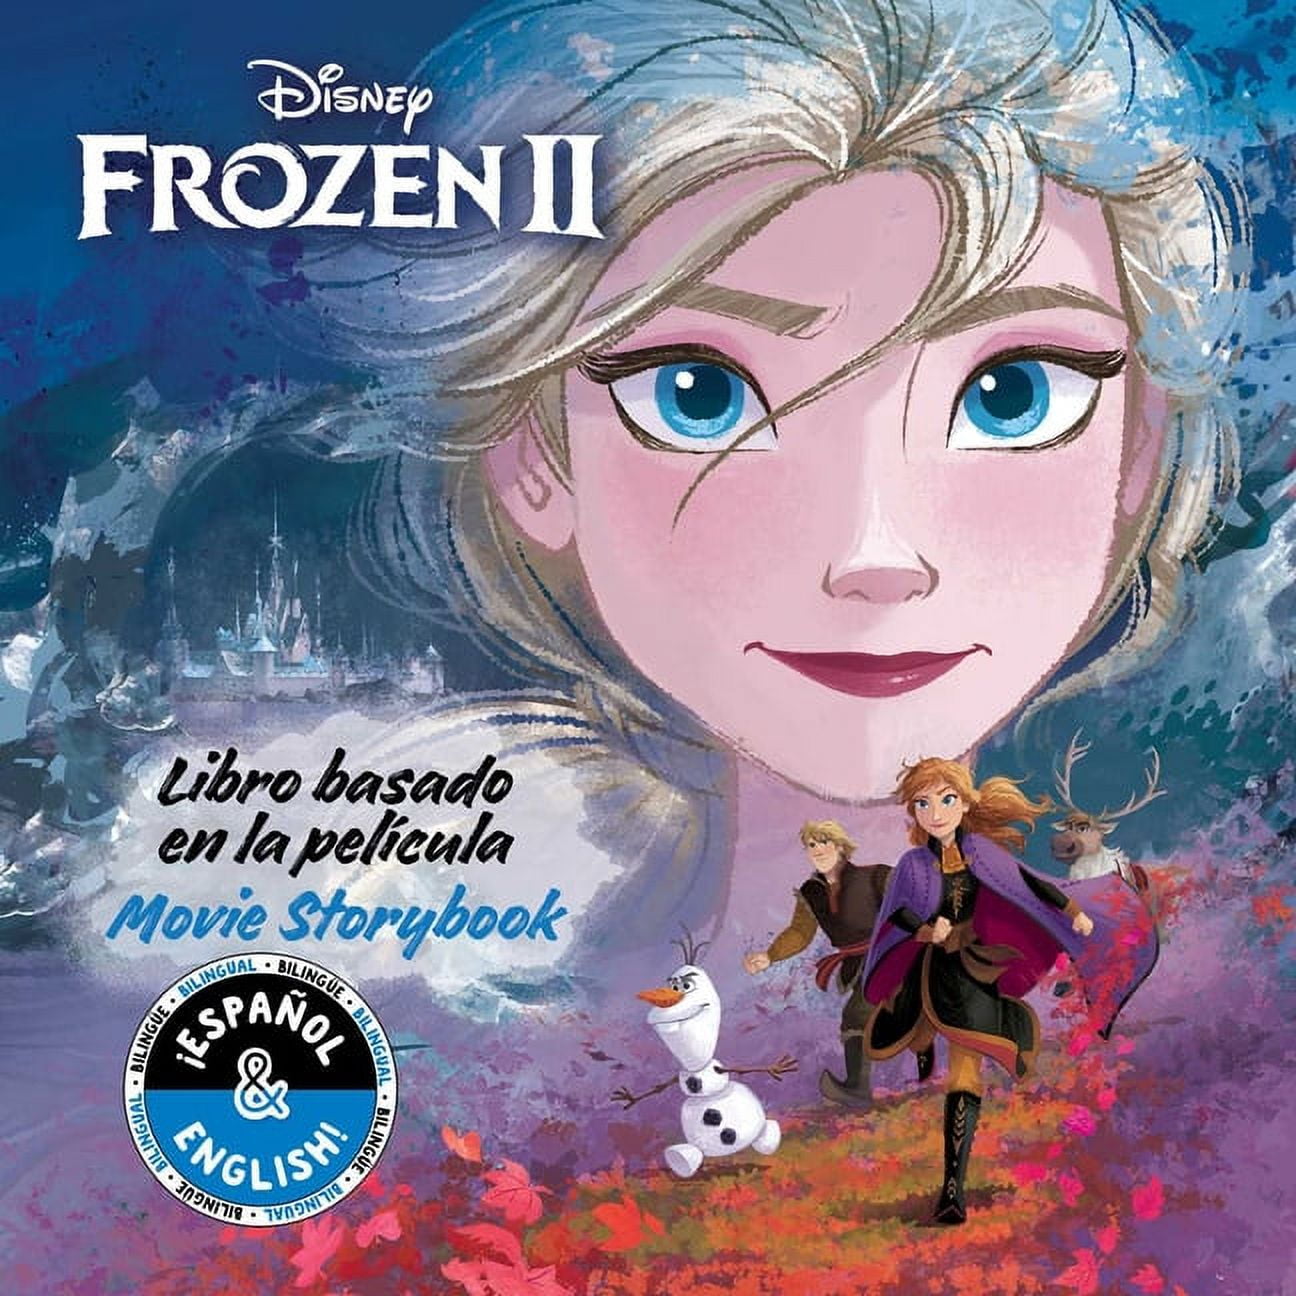 Disney Bilingual: Disney Frozen 2: Movie Storybook / Libro basado